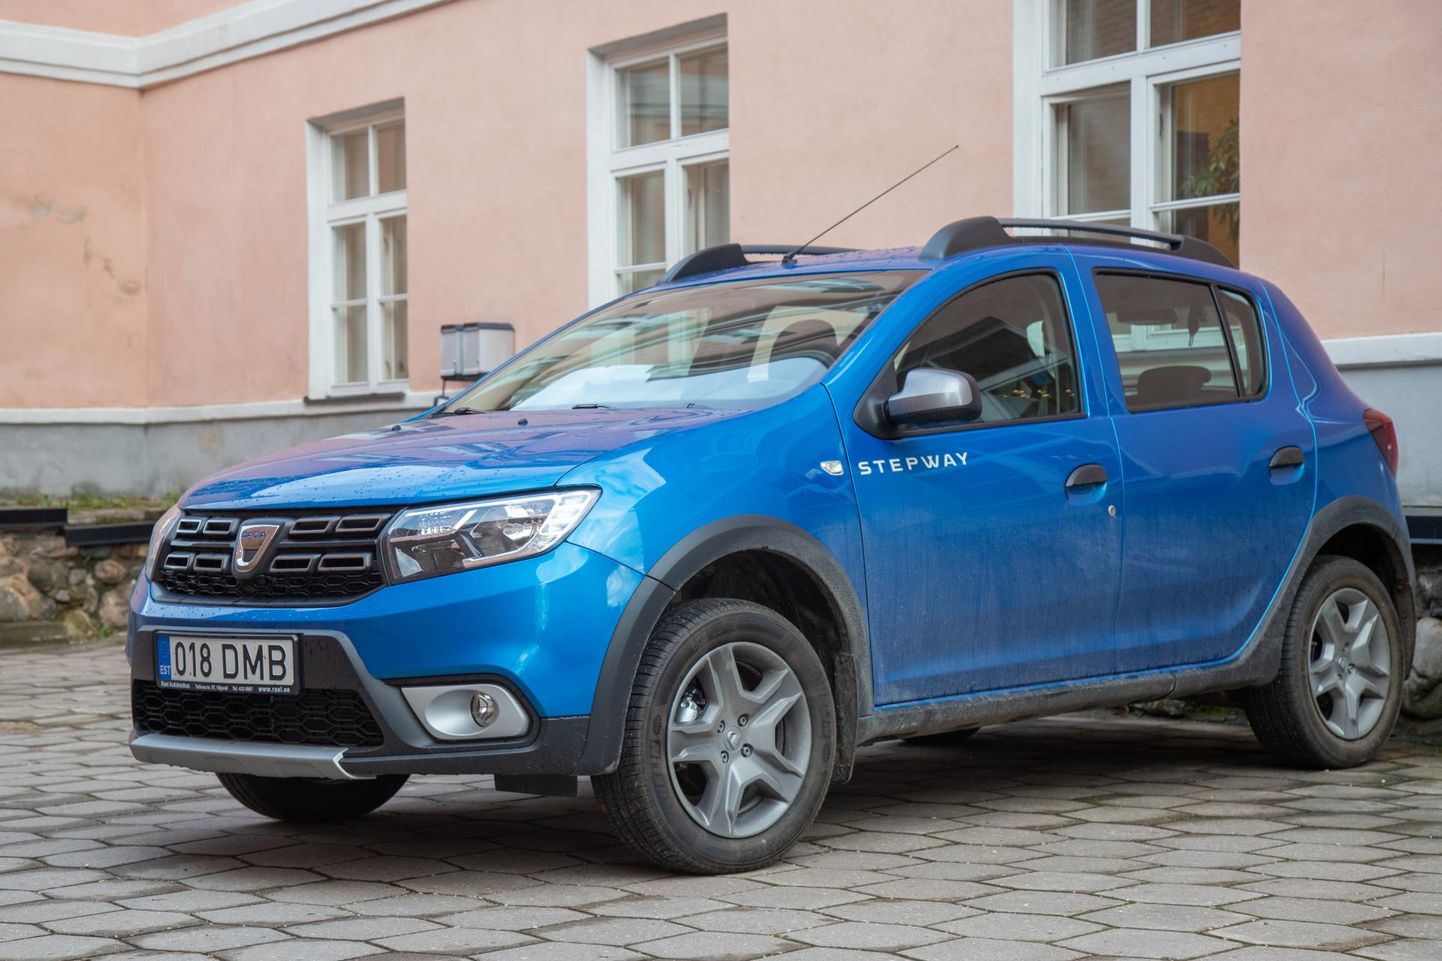 Viljandi vald liisis neli sinist Dacia Sanderot, mis asendavad varem sotsiaaltöötajate kasutuses olnud elektriautosid. Sotsiaaltöötajad on uute autodega rahul.